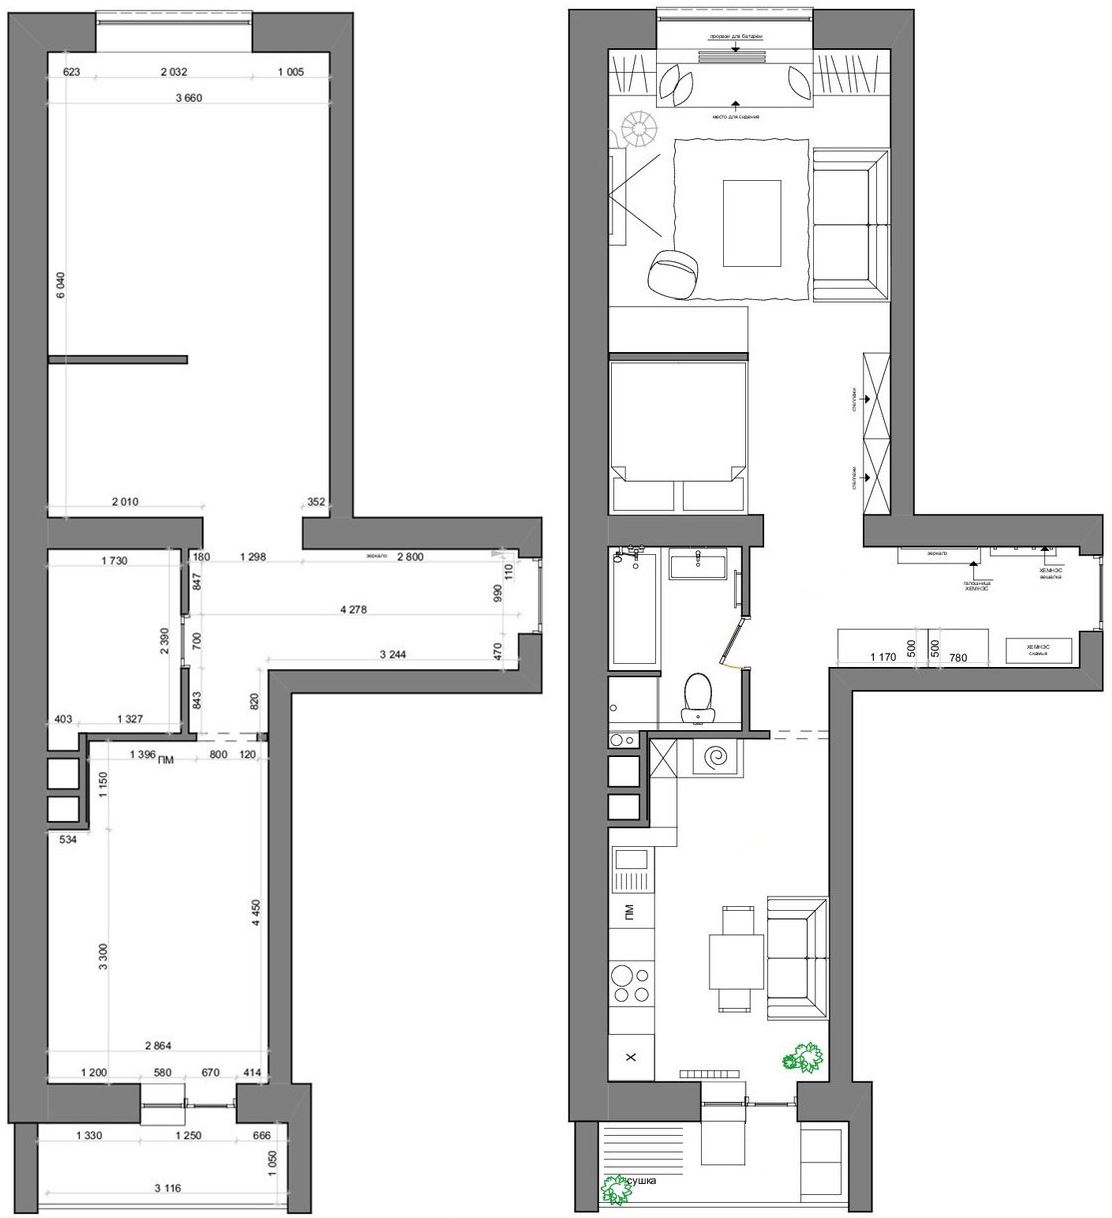 Alaprajz - 51m2, keskeny alaprajz - egyszobás lakás optimális berendezése IKEA bútorokkal - skandináv lakberendezés semleges színpalettával